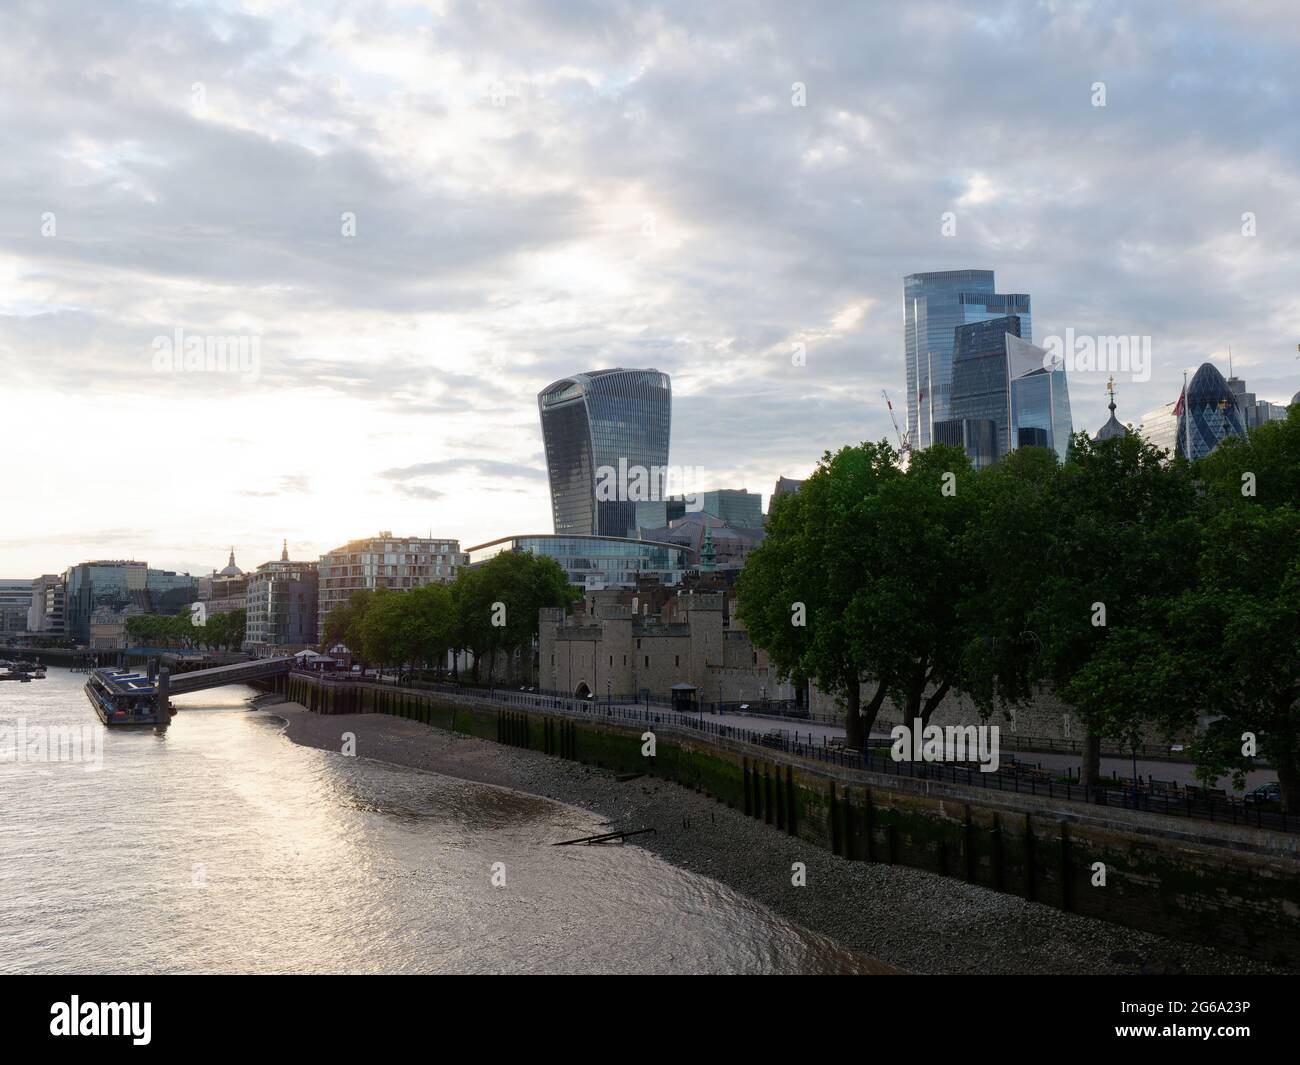 London, Greater London, England - 26 2021. Juni: An einem Sommerabend an der Themse mit dem Wolkenkratzer Walkie Talkie, der den Sky Garden beherbergt. Stockfoto